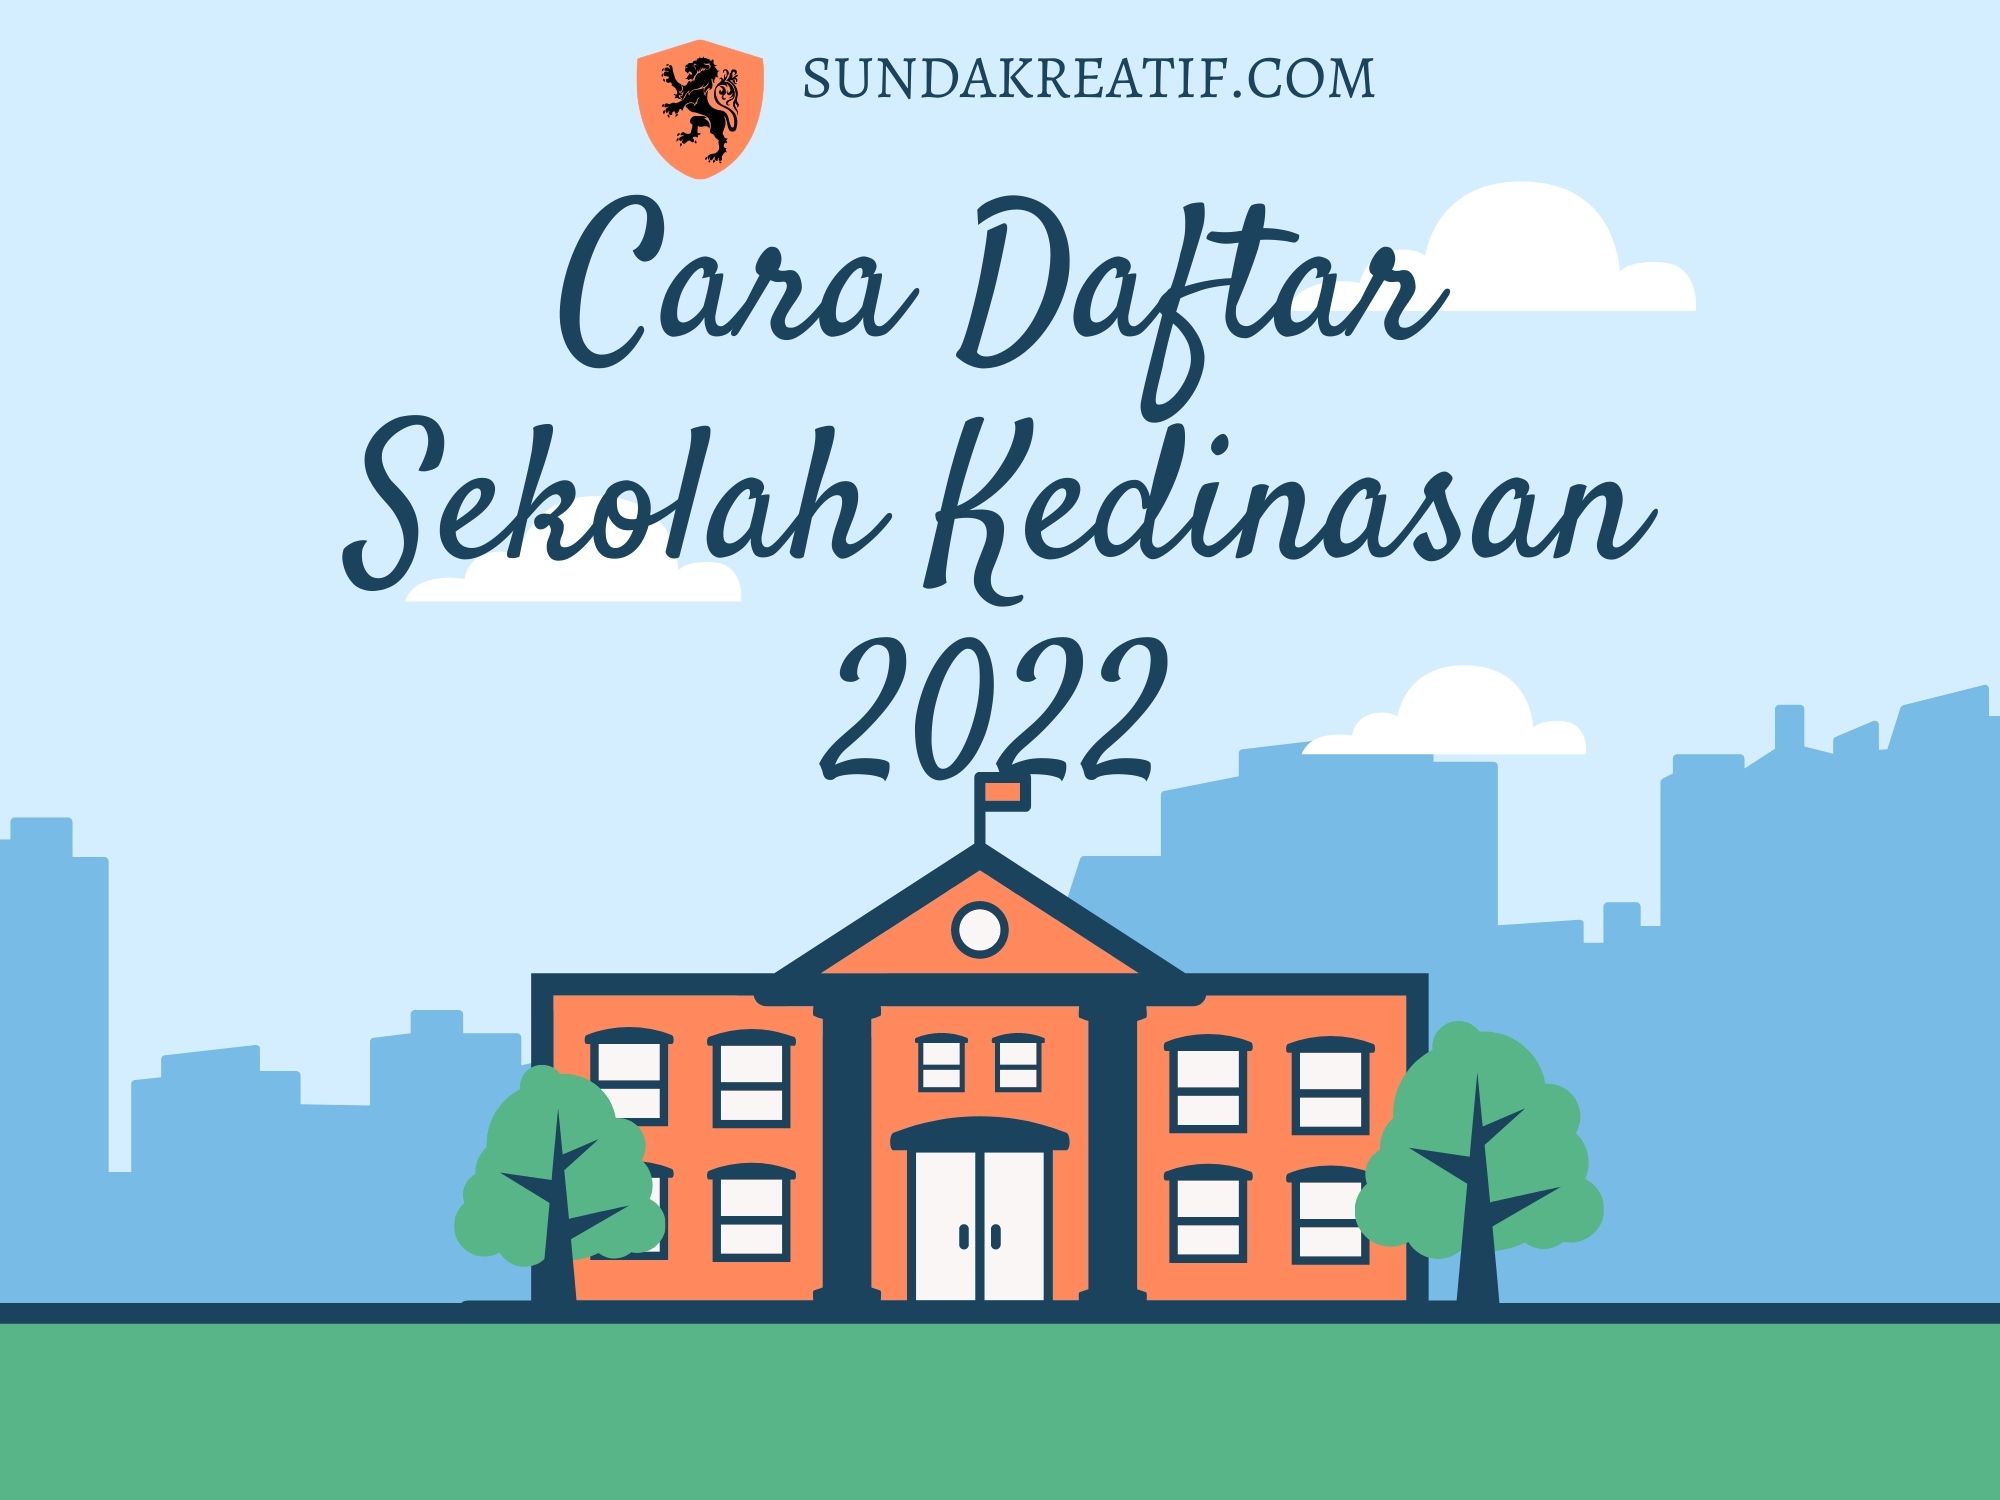 Link dan Cara Pendaftaran Sekolah Kedinasan 2022